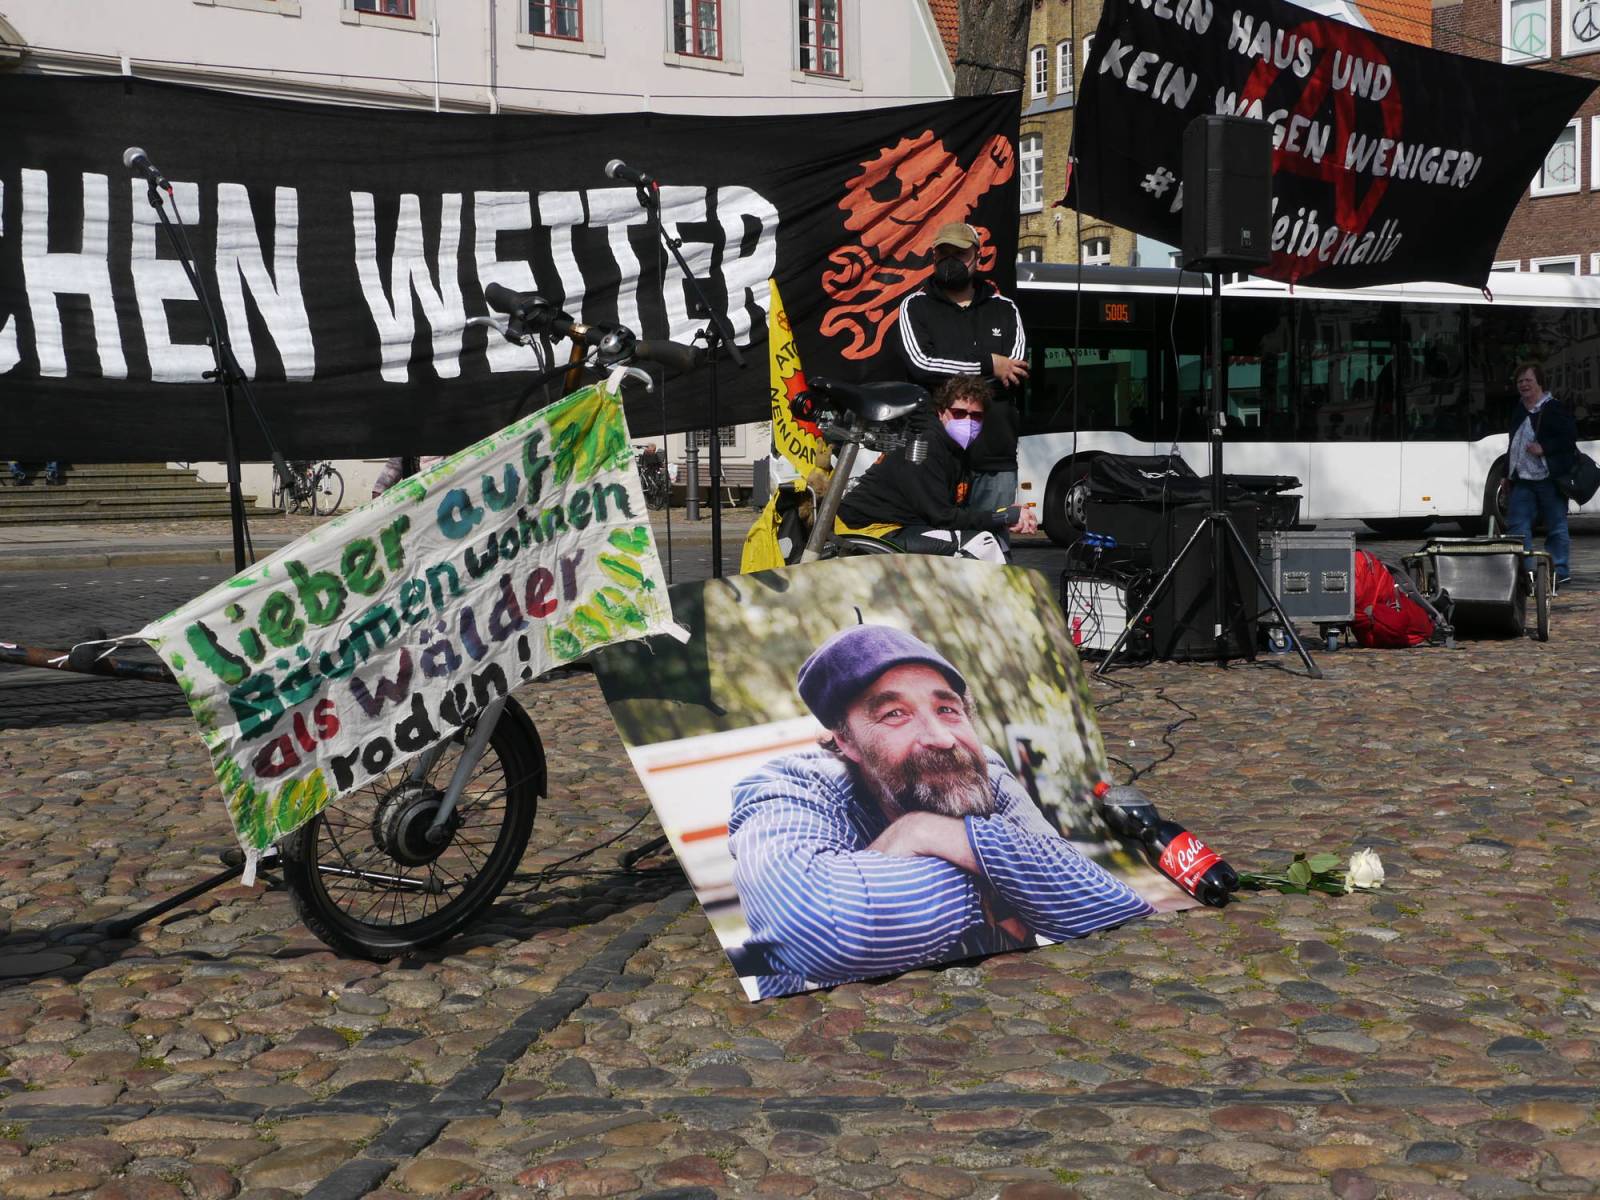 Banner "Wor machen Weiter", foto von Karsten, sein Fahrrad, Cola Flasche, Banner "lieber in den Bäumen wohen als Wälder roden"